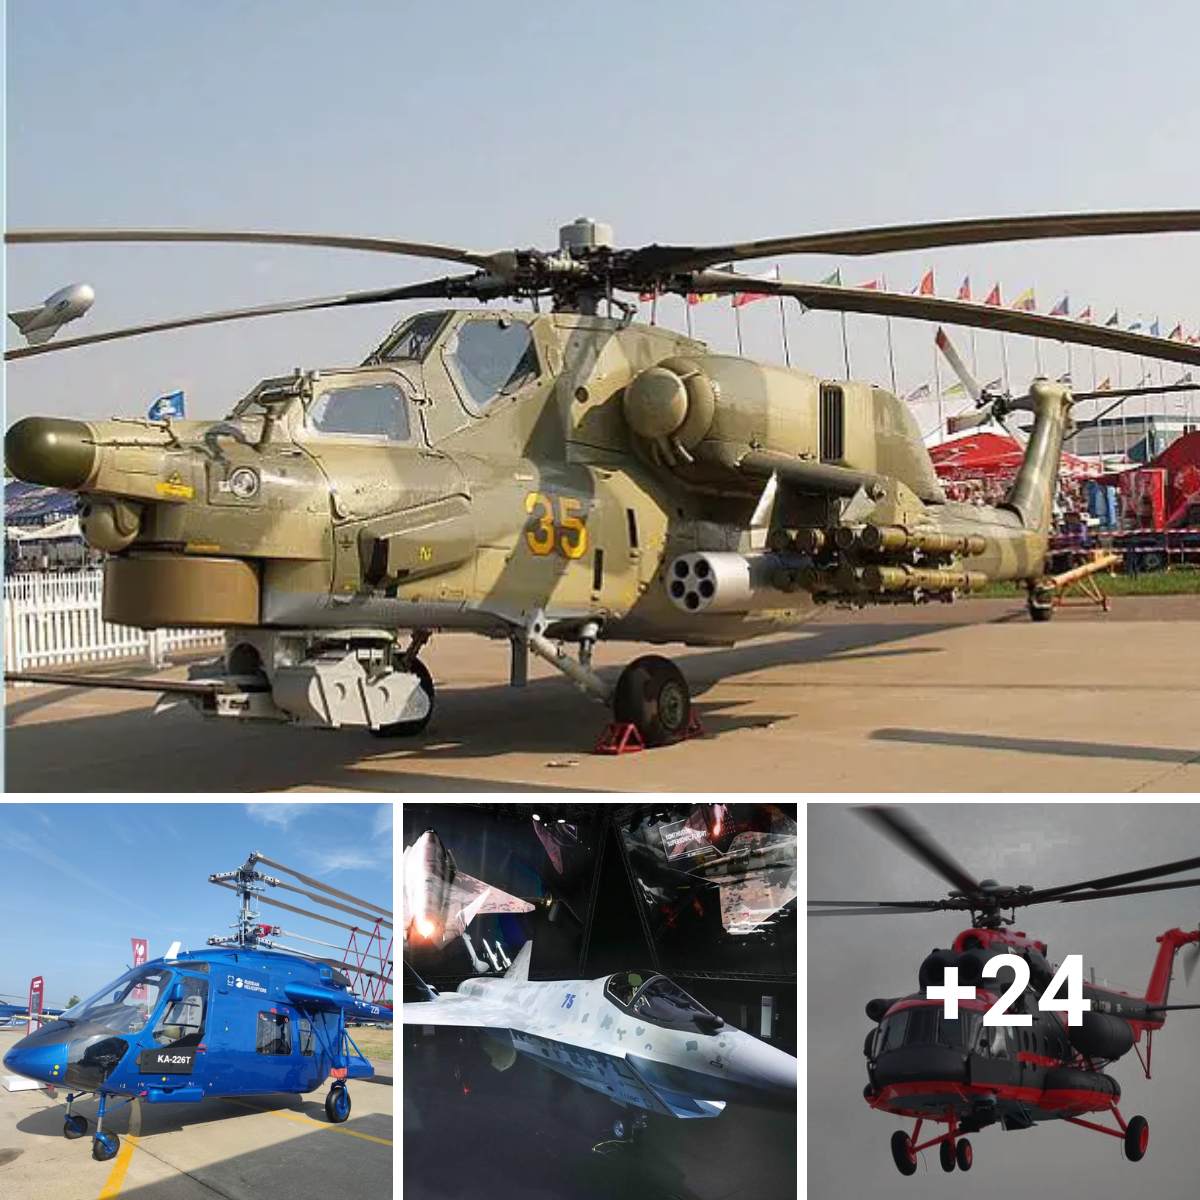 Russian Military Aircraft Make Their World Premiere in Dubai